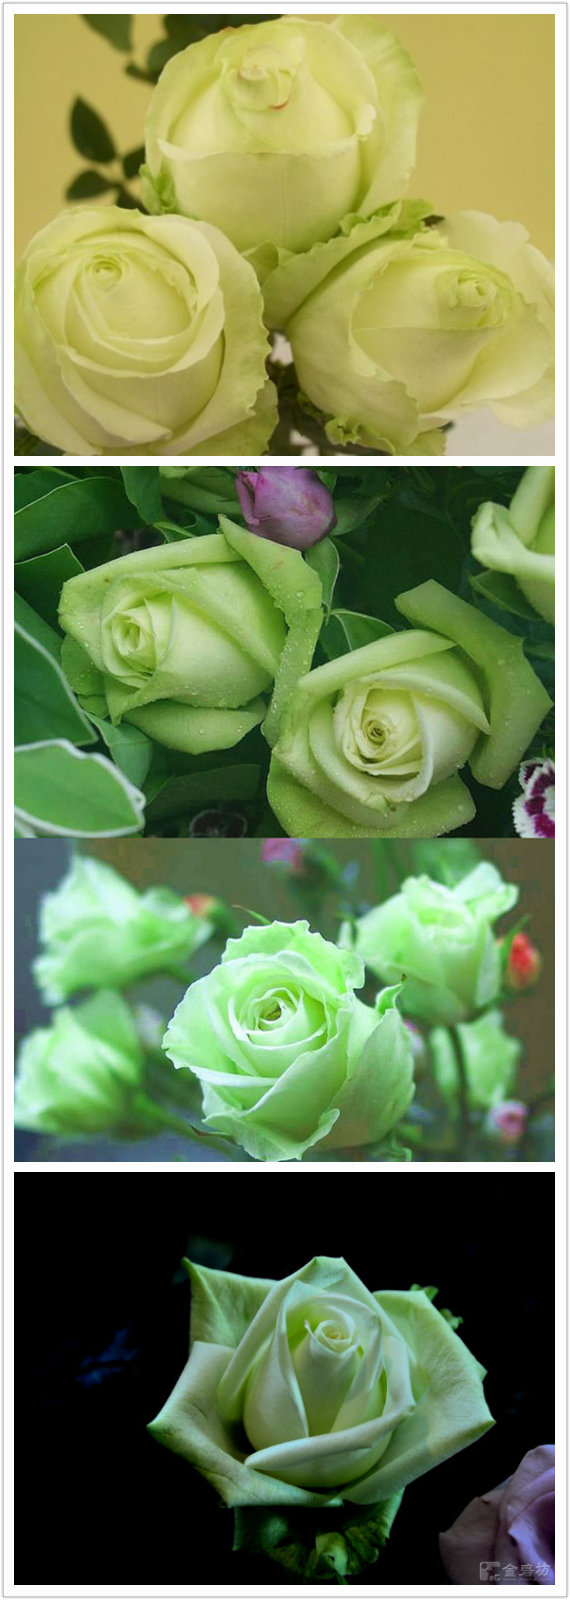 「玫瑰」『淡绿玫瑰』[花语]—简朴纯真,青春常驻.